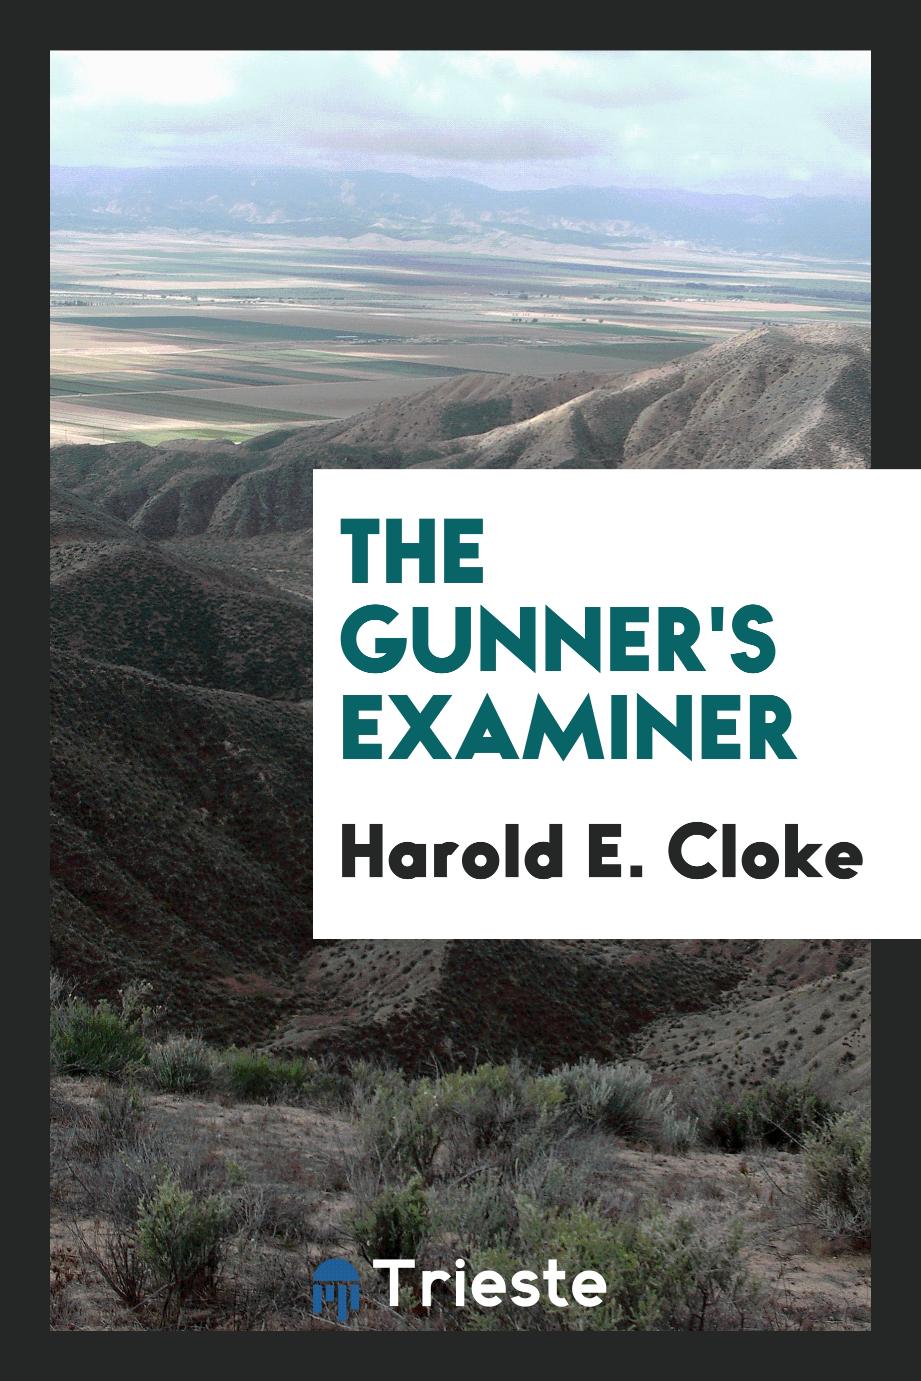 The gunner's examiner